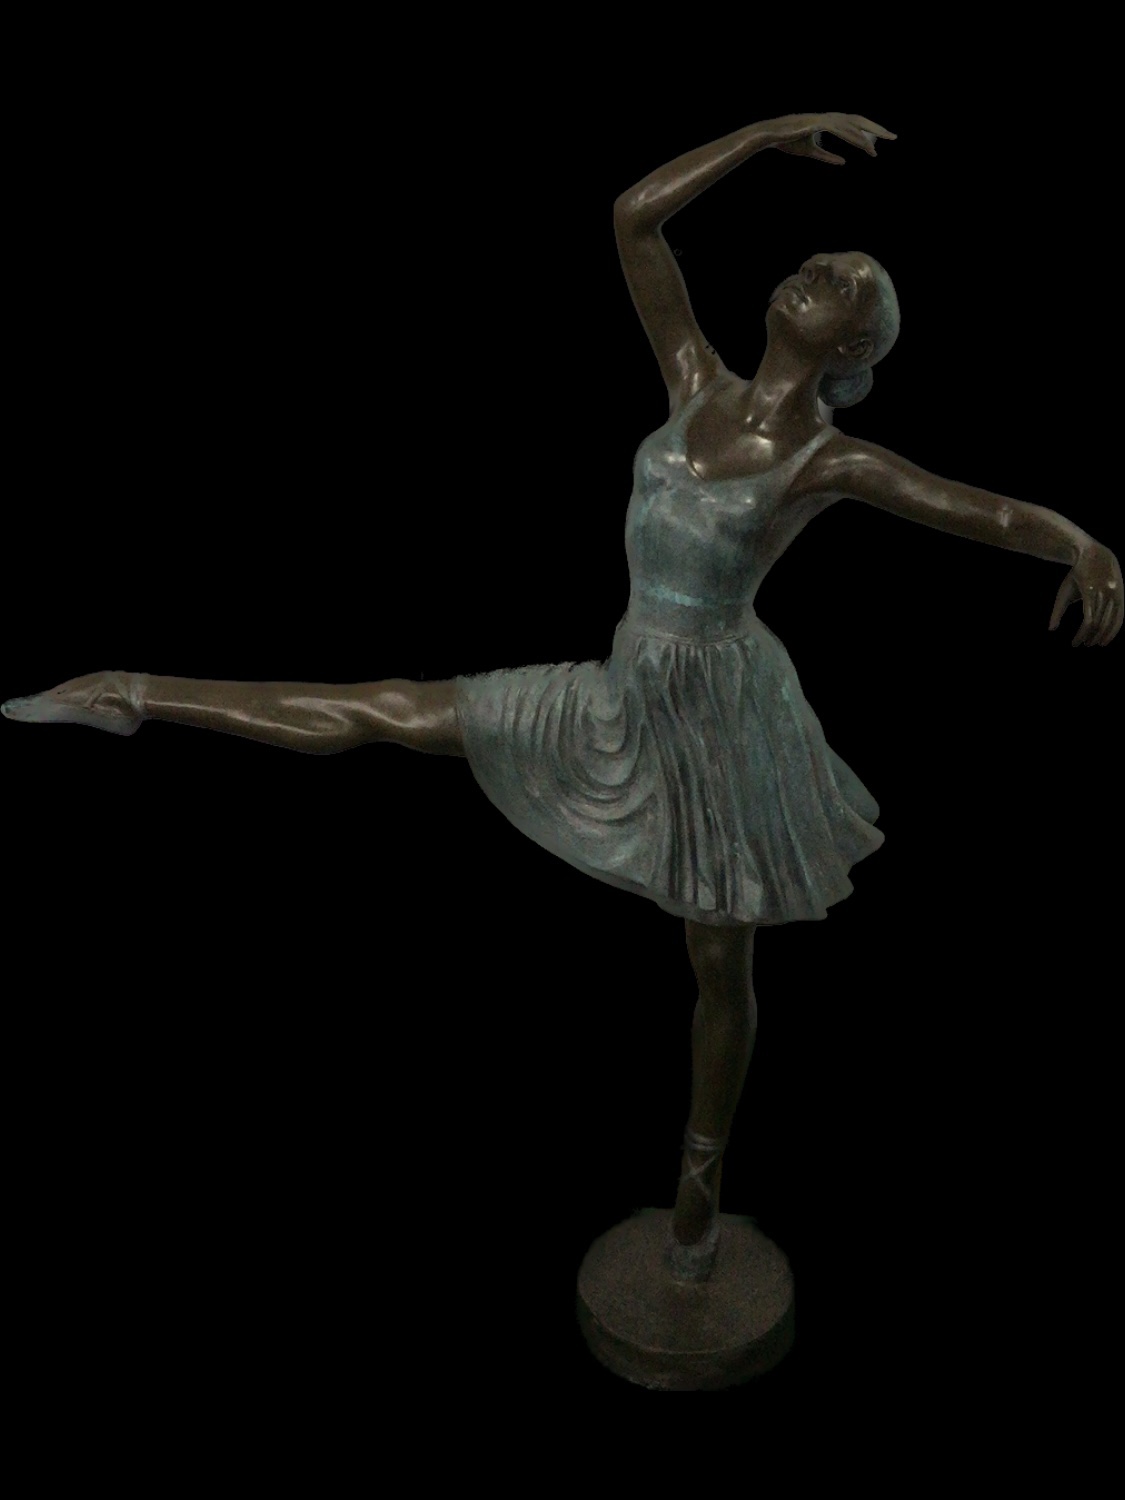 铜雕塑芭蕾舞铜像摆件户外庭院展厅大件雕塑家居装饰品创意礼品